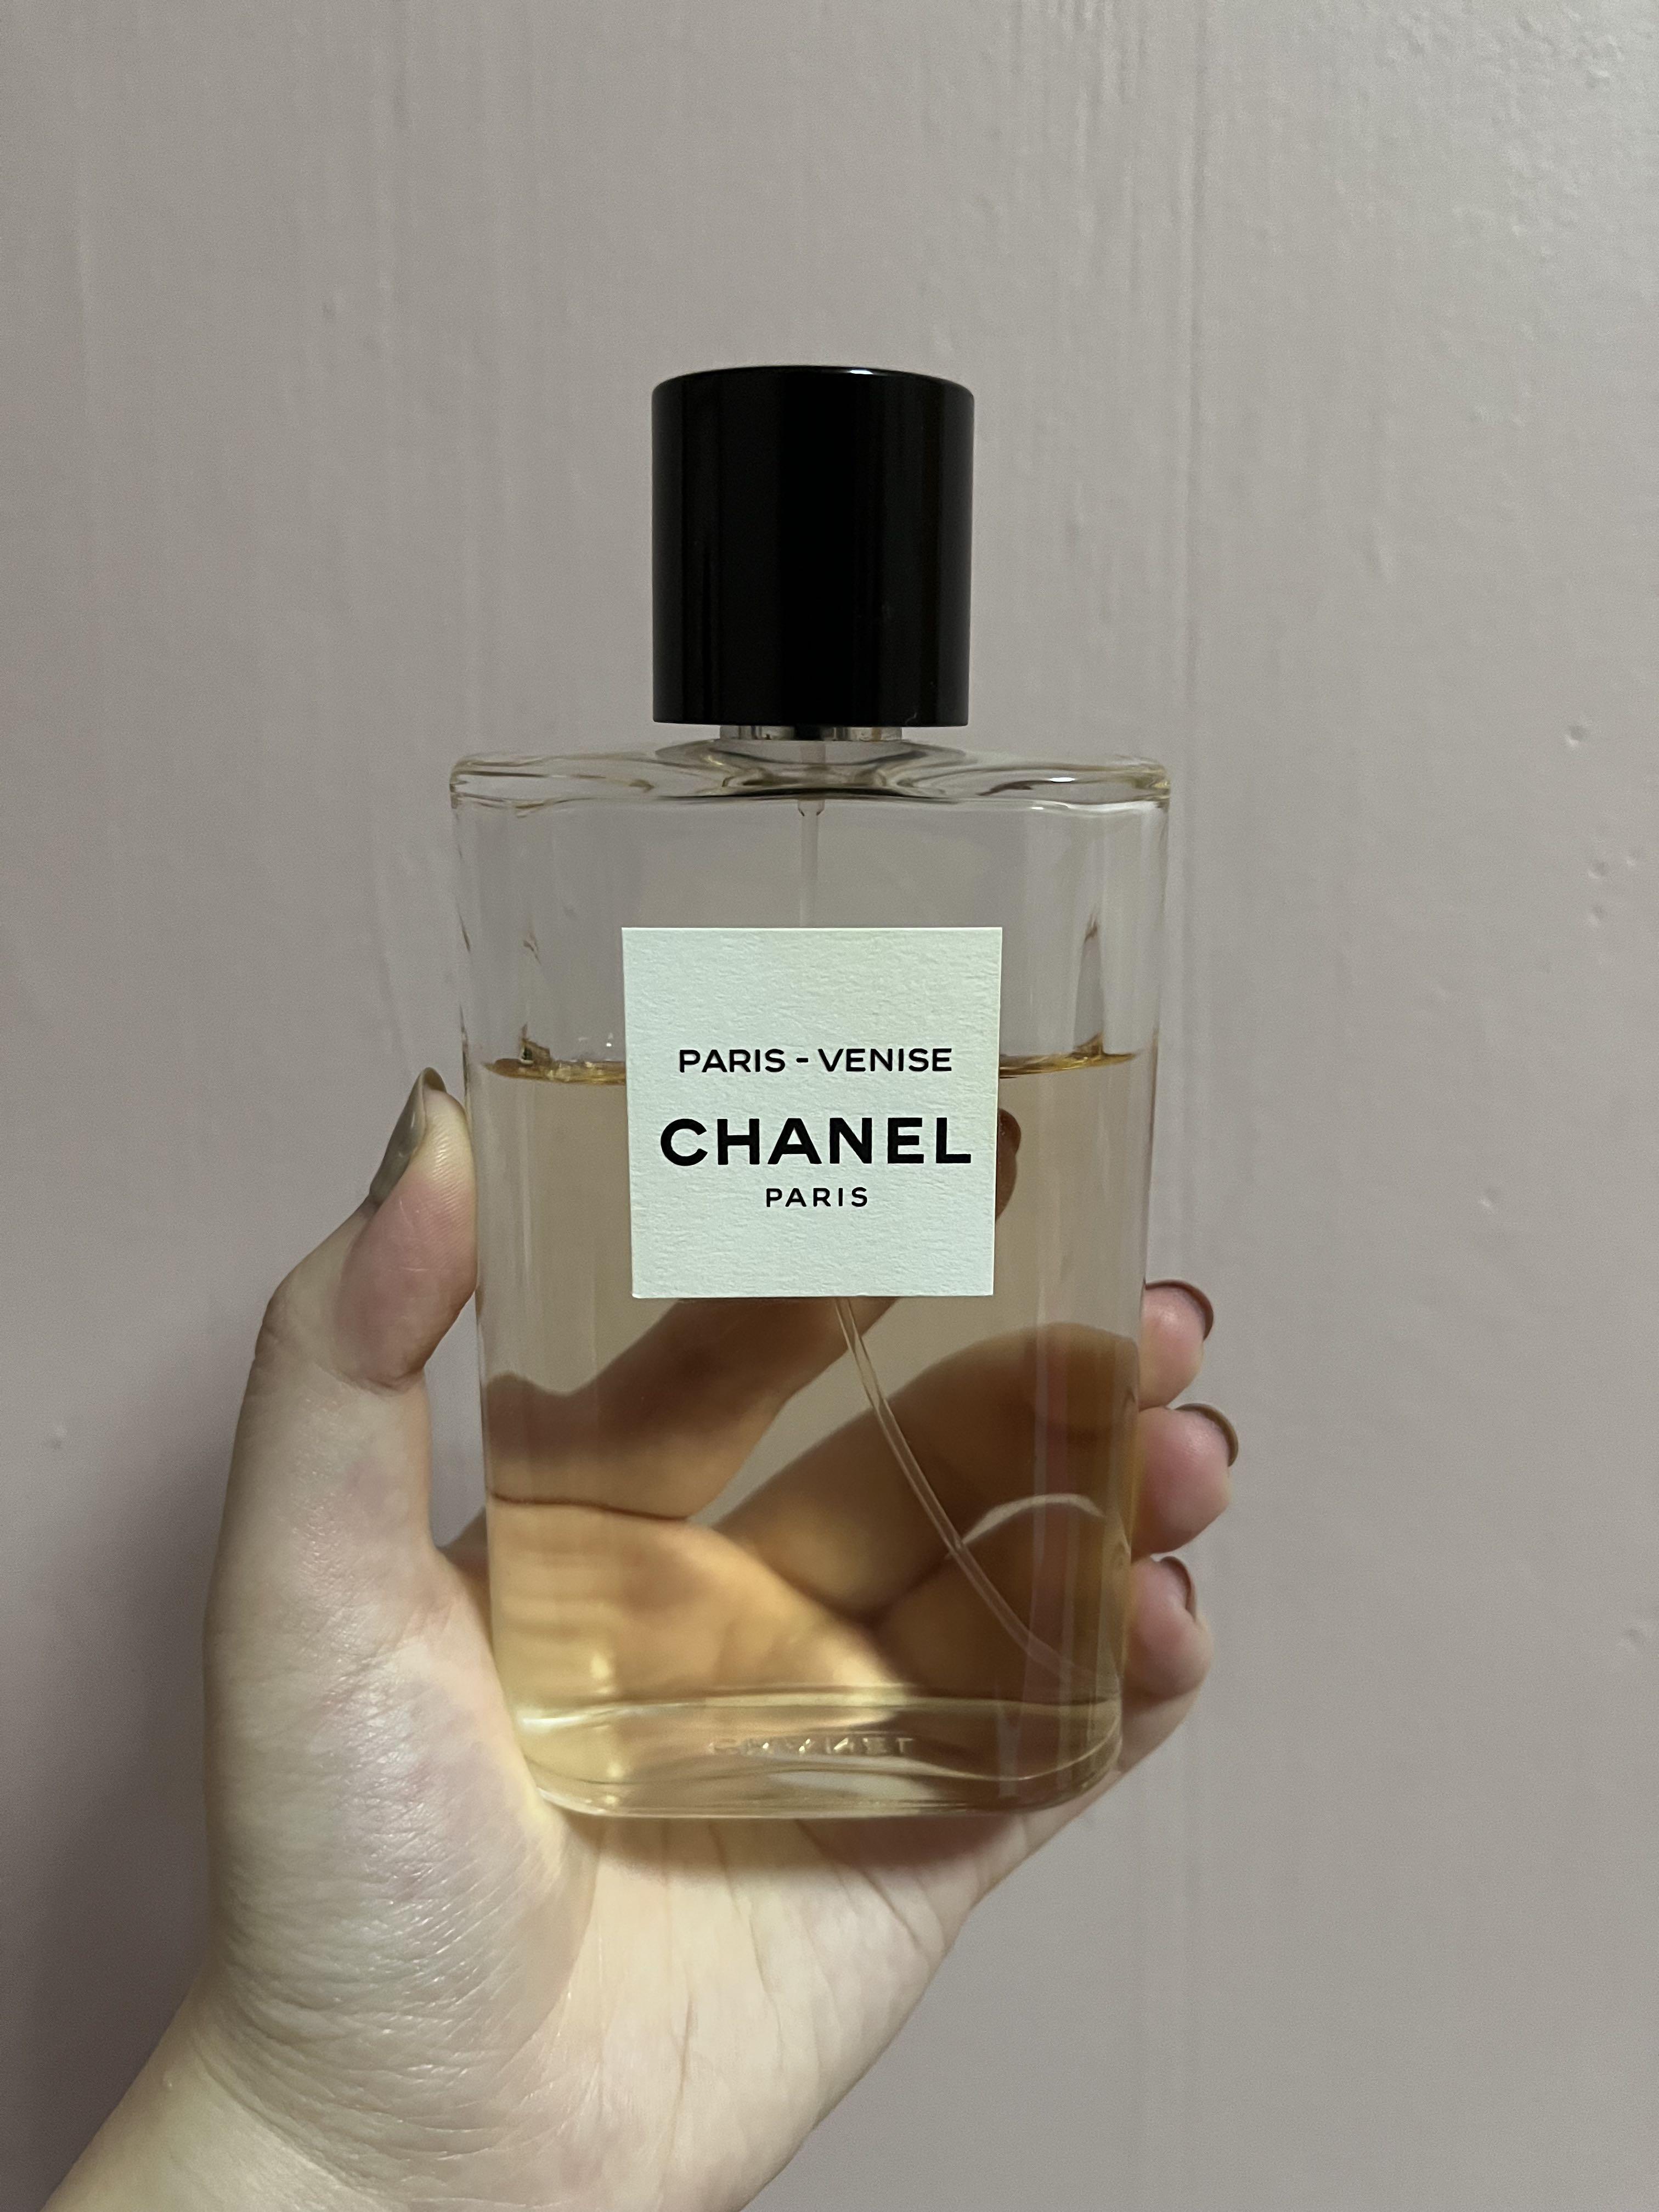 Chanel Paris-Venise Perfume